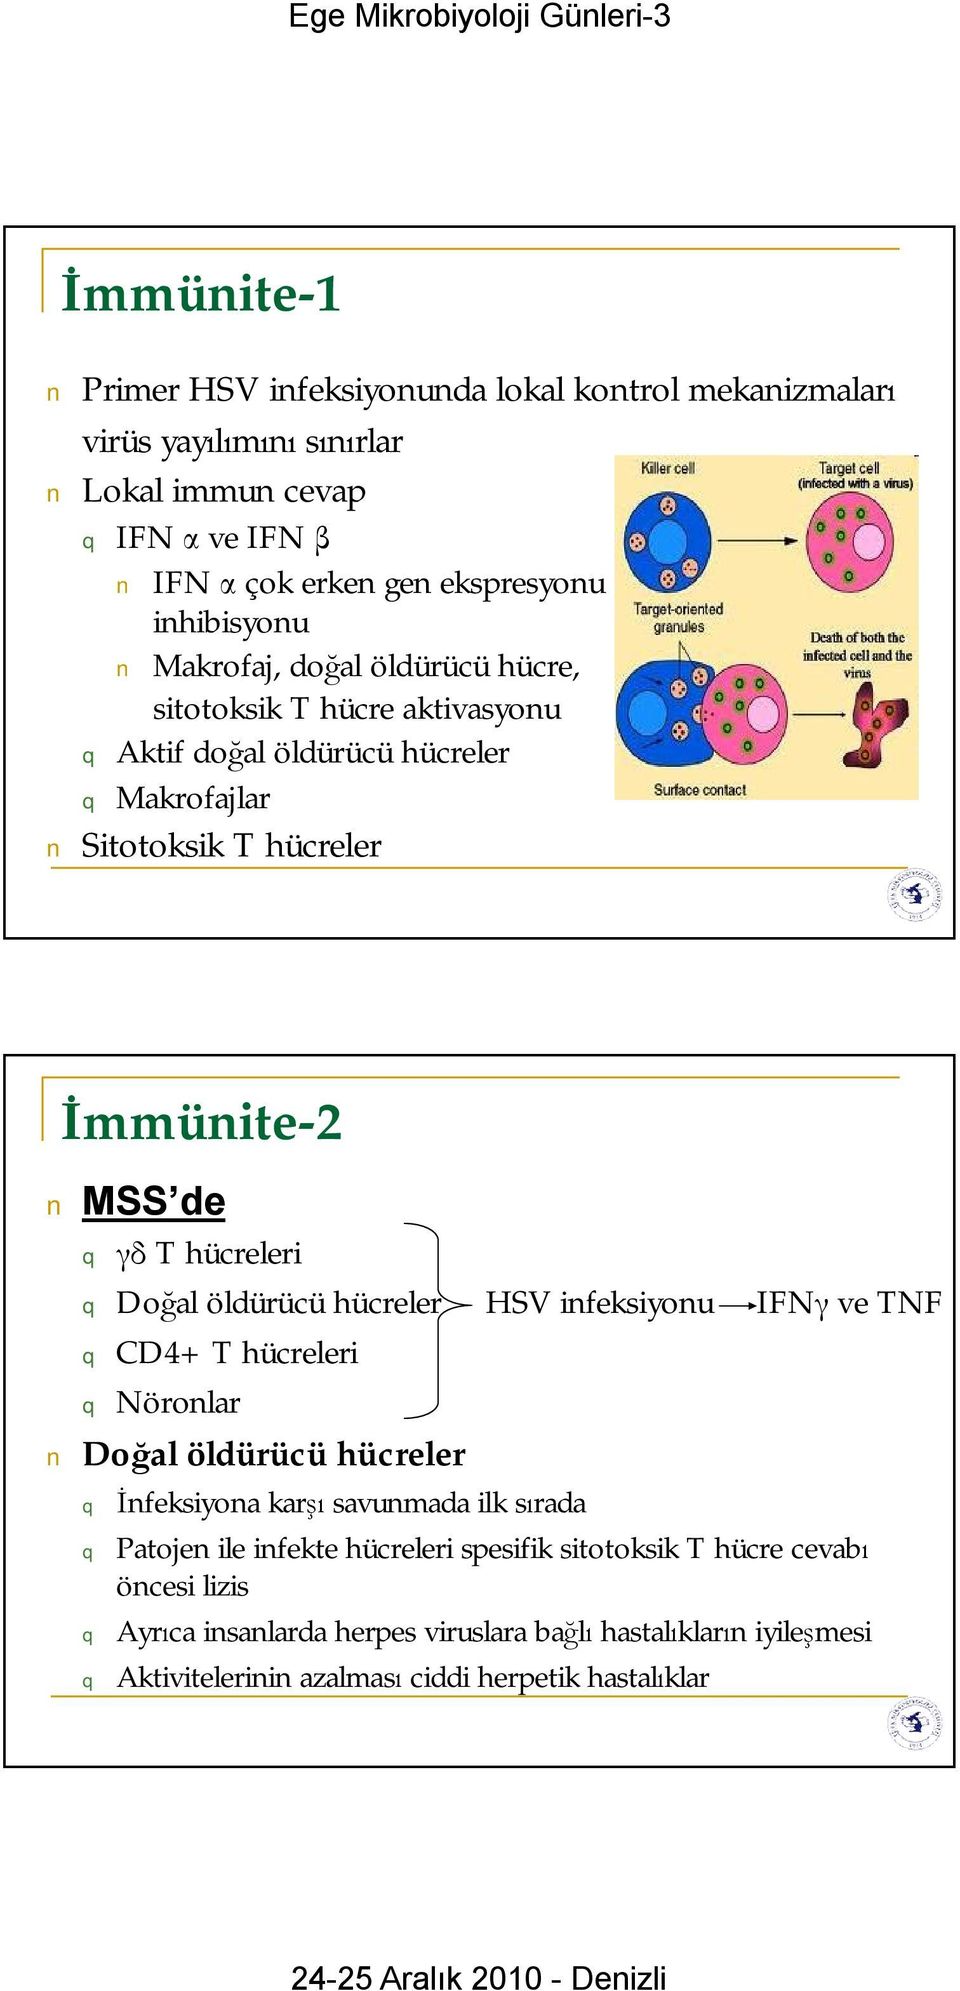 hücreleri Doğal öldürücü hücreler HSV infeksiyonu IFNγ ve TNF CD4+ T hücreleri Nöronlar Doğal öldürücü hücreler İnfeksiyona karşı savunmada ilk sırada Patojen ile